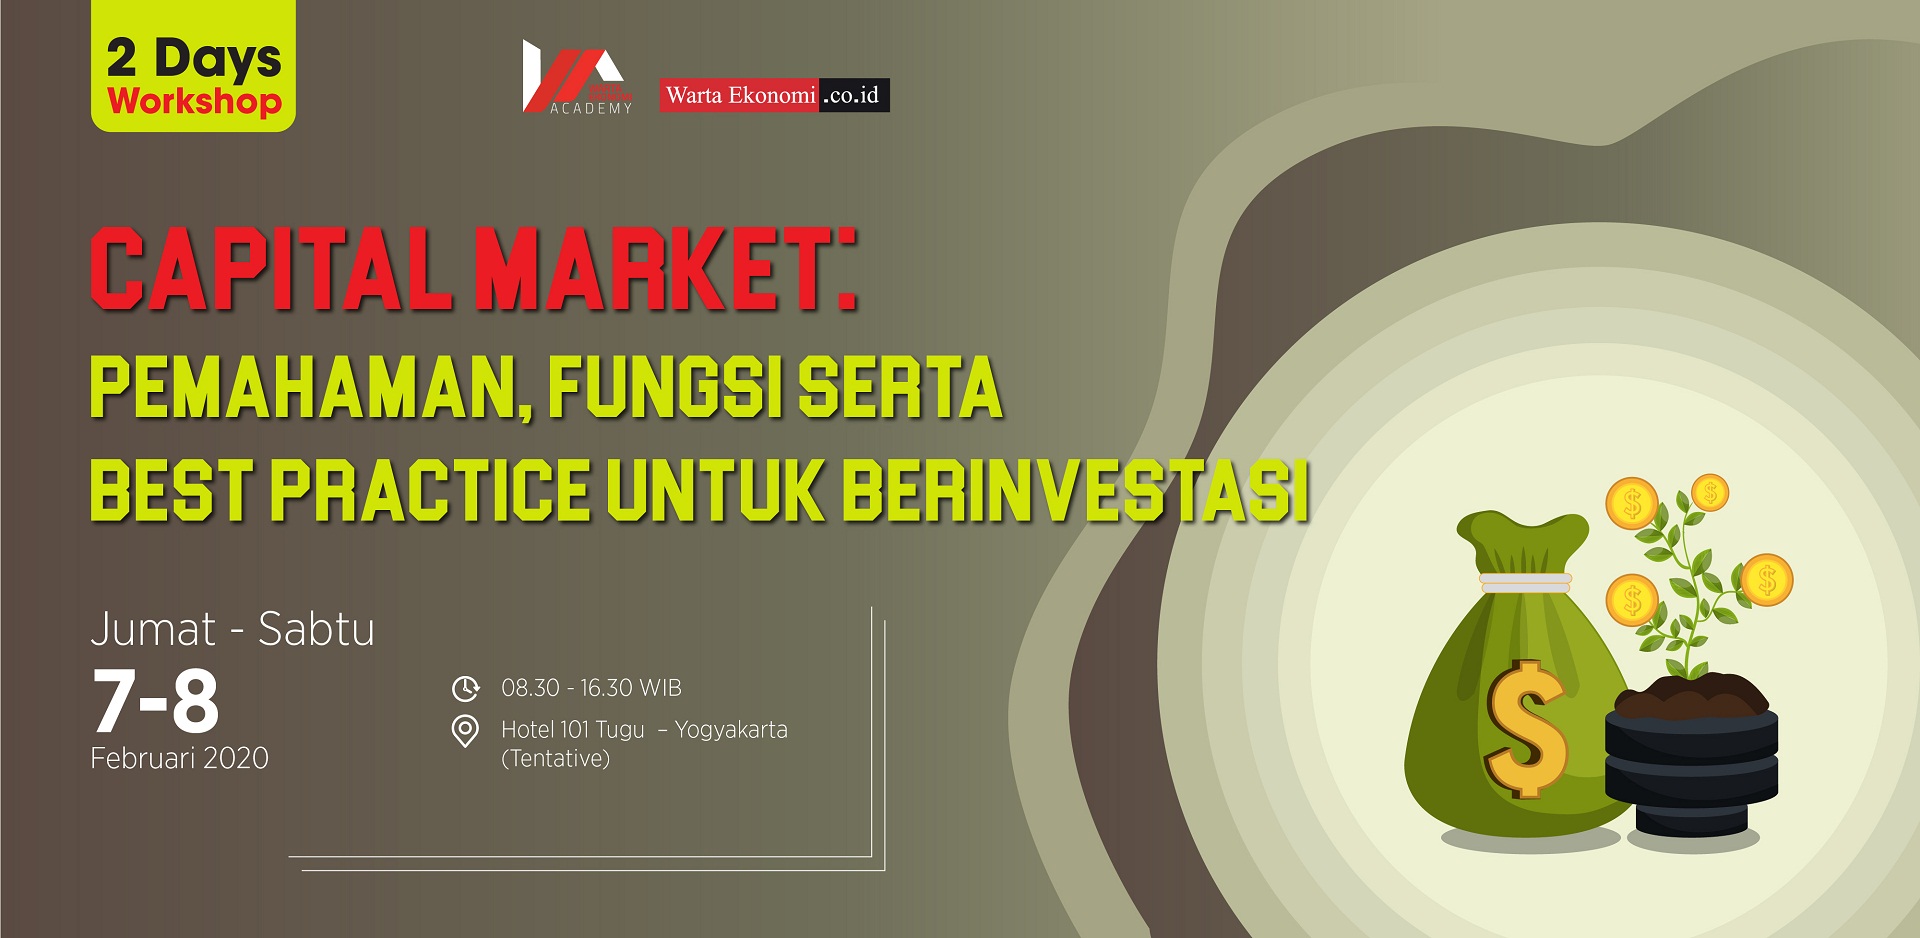 Capital Market: Pemahaman, Fungsi Serta Best Practice untuk Berinvestasi